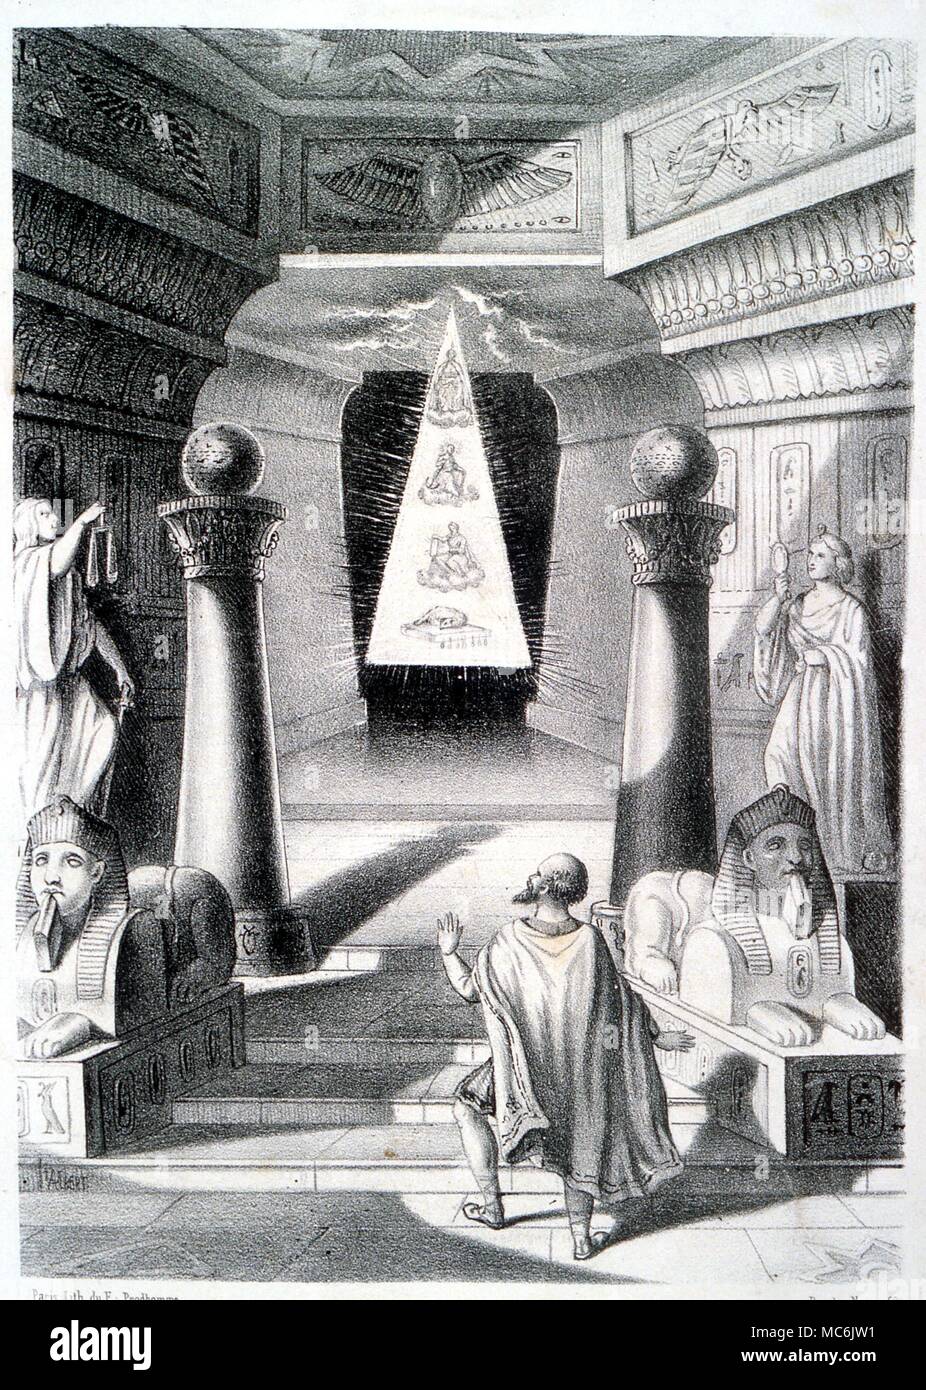 voice gallon Civic Las dos columnas de mampostería y triángulo. Litografía mostrando los  símbolos esotéricos de la masonería, incluidas las dos columnas que delante del  Templo de Salomón, y la radiante triángulo. Desde el